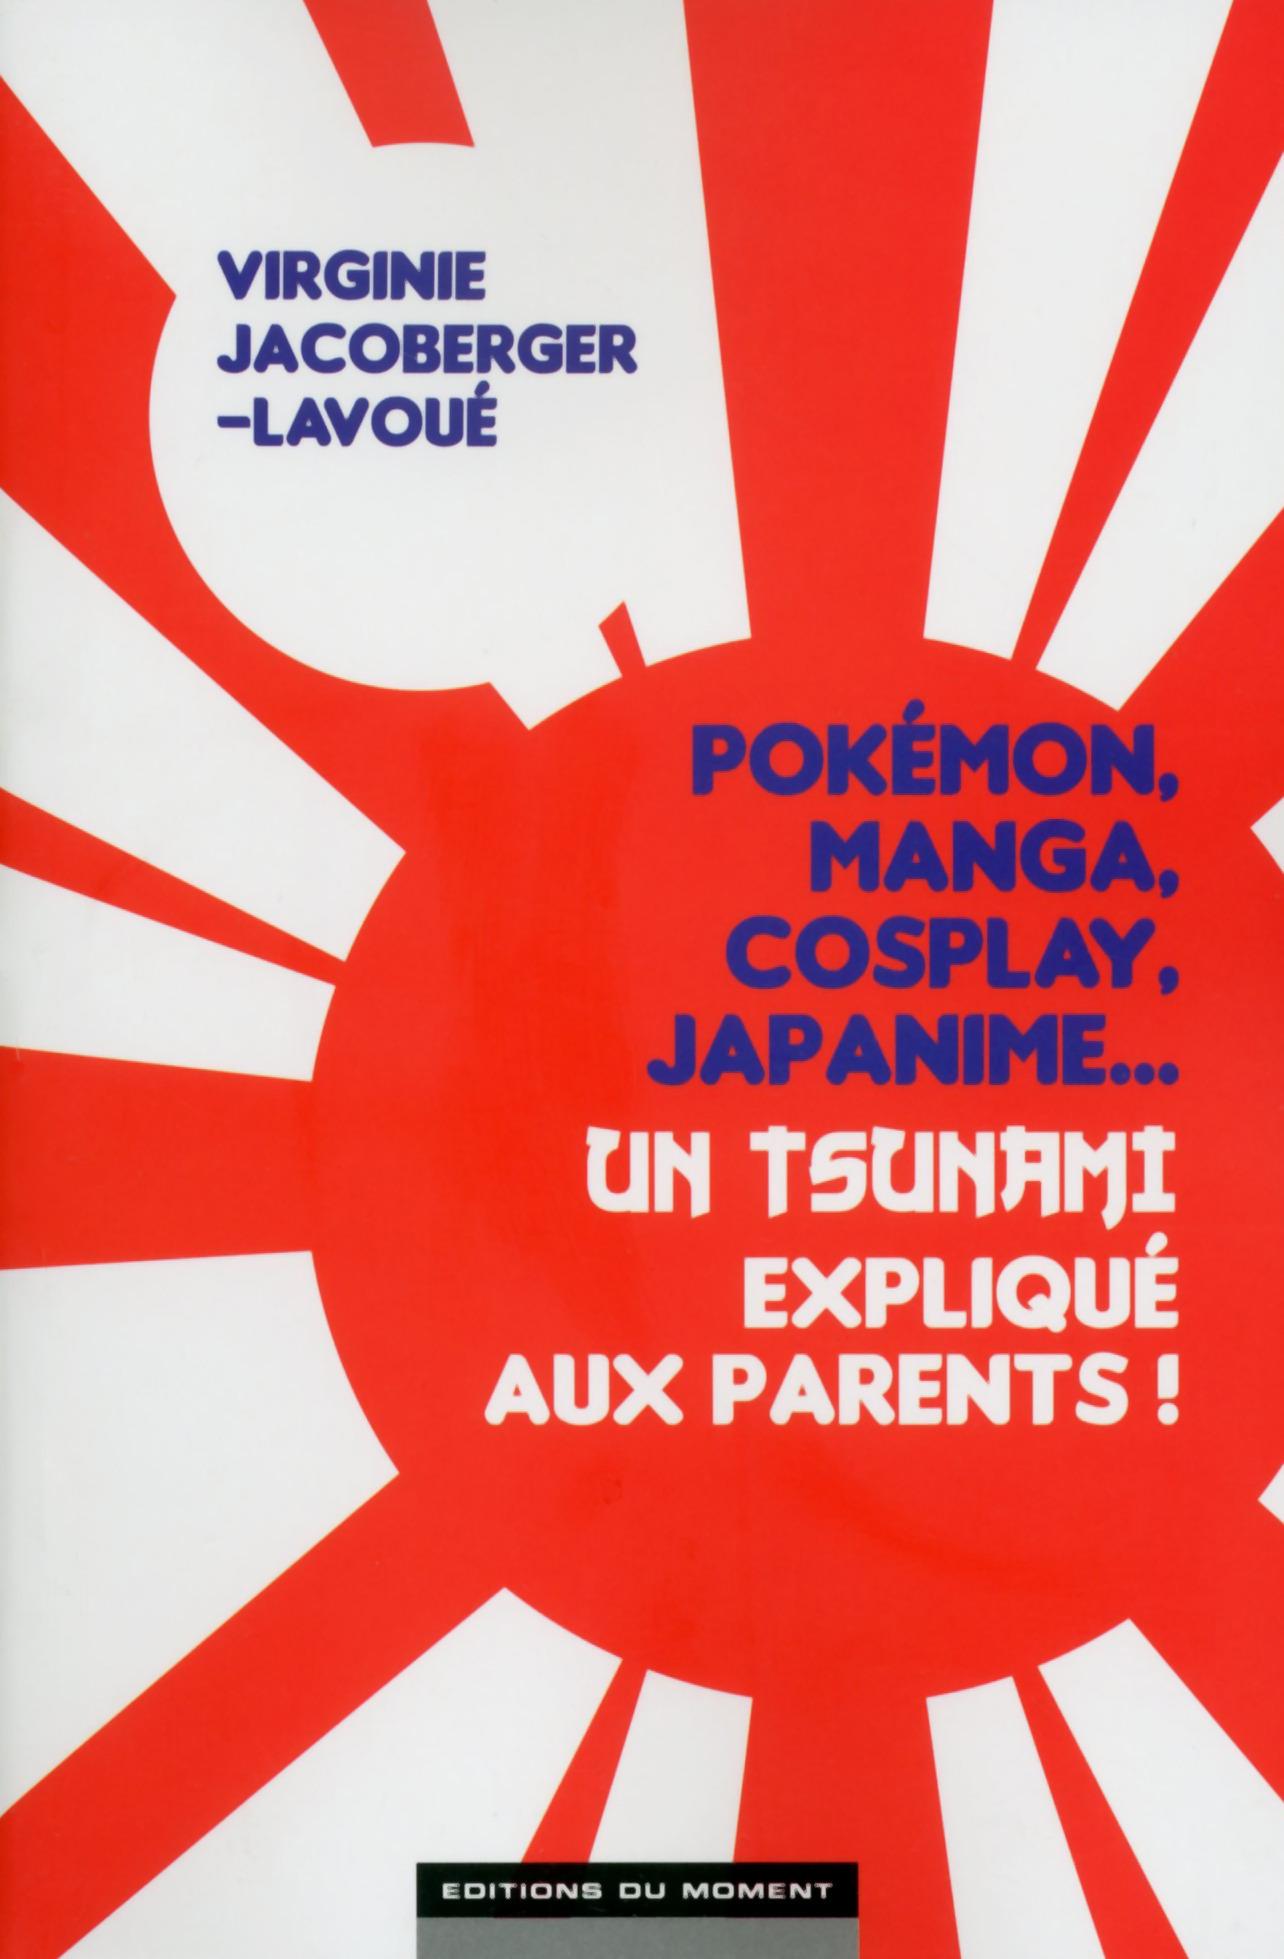 Pokémon, manga, cosplay, japanime...un tsunami expliqué aux parents !